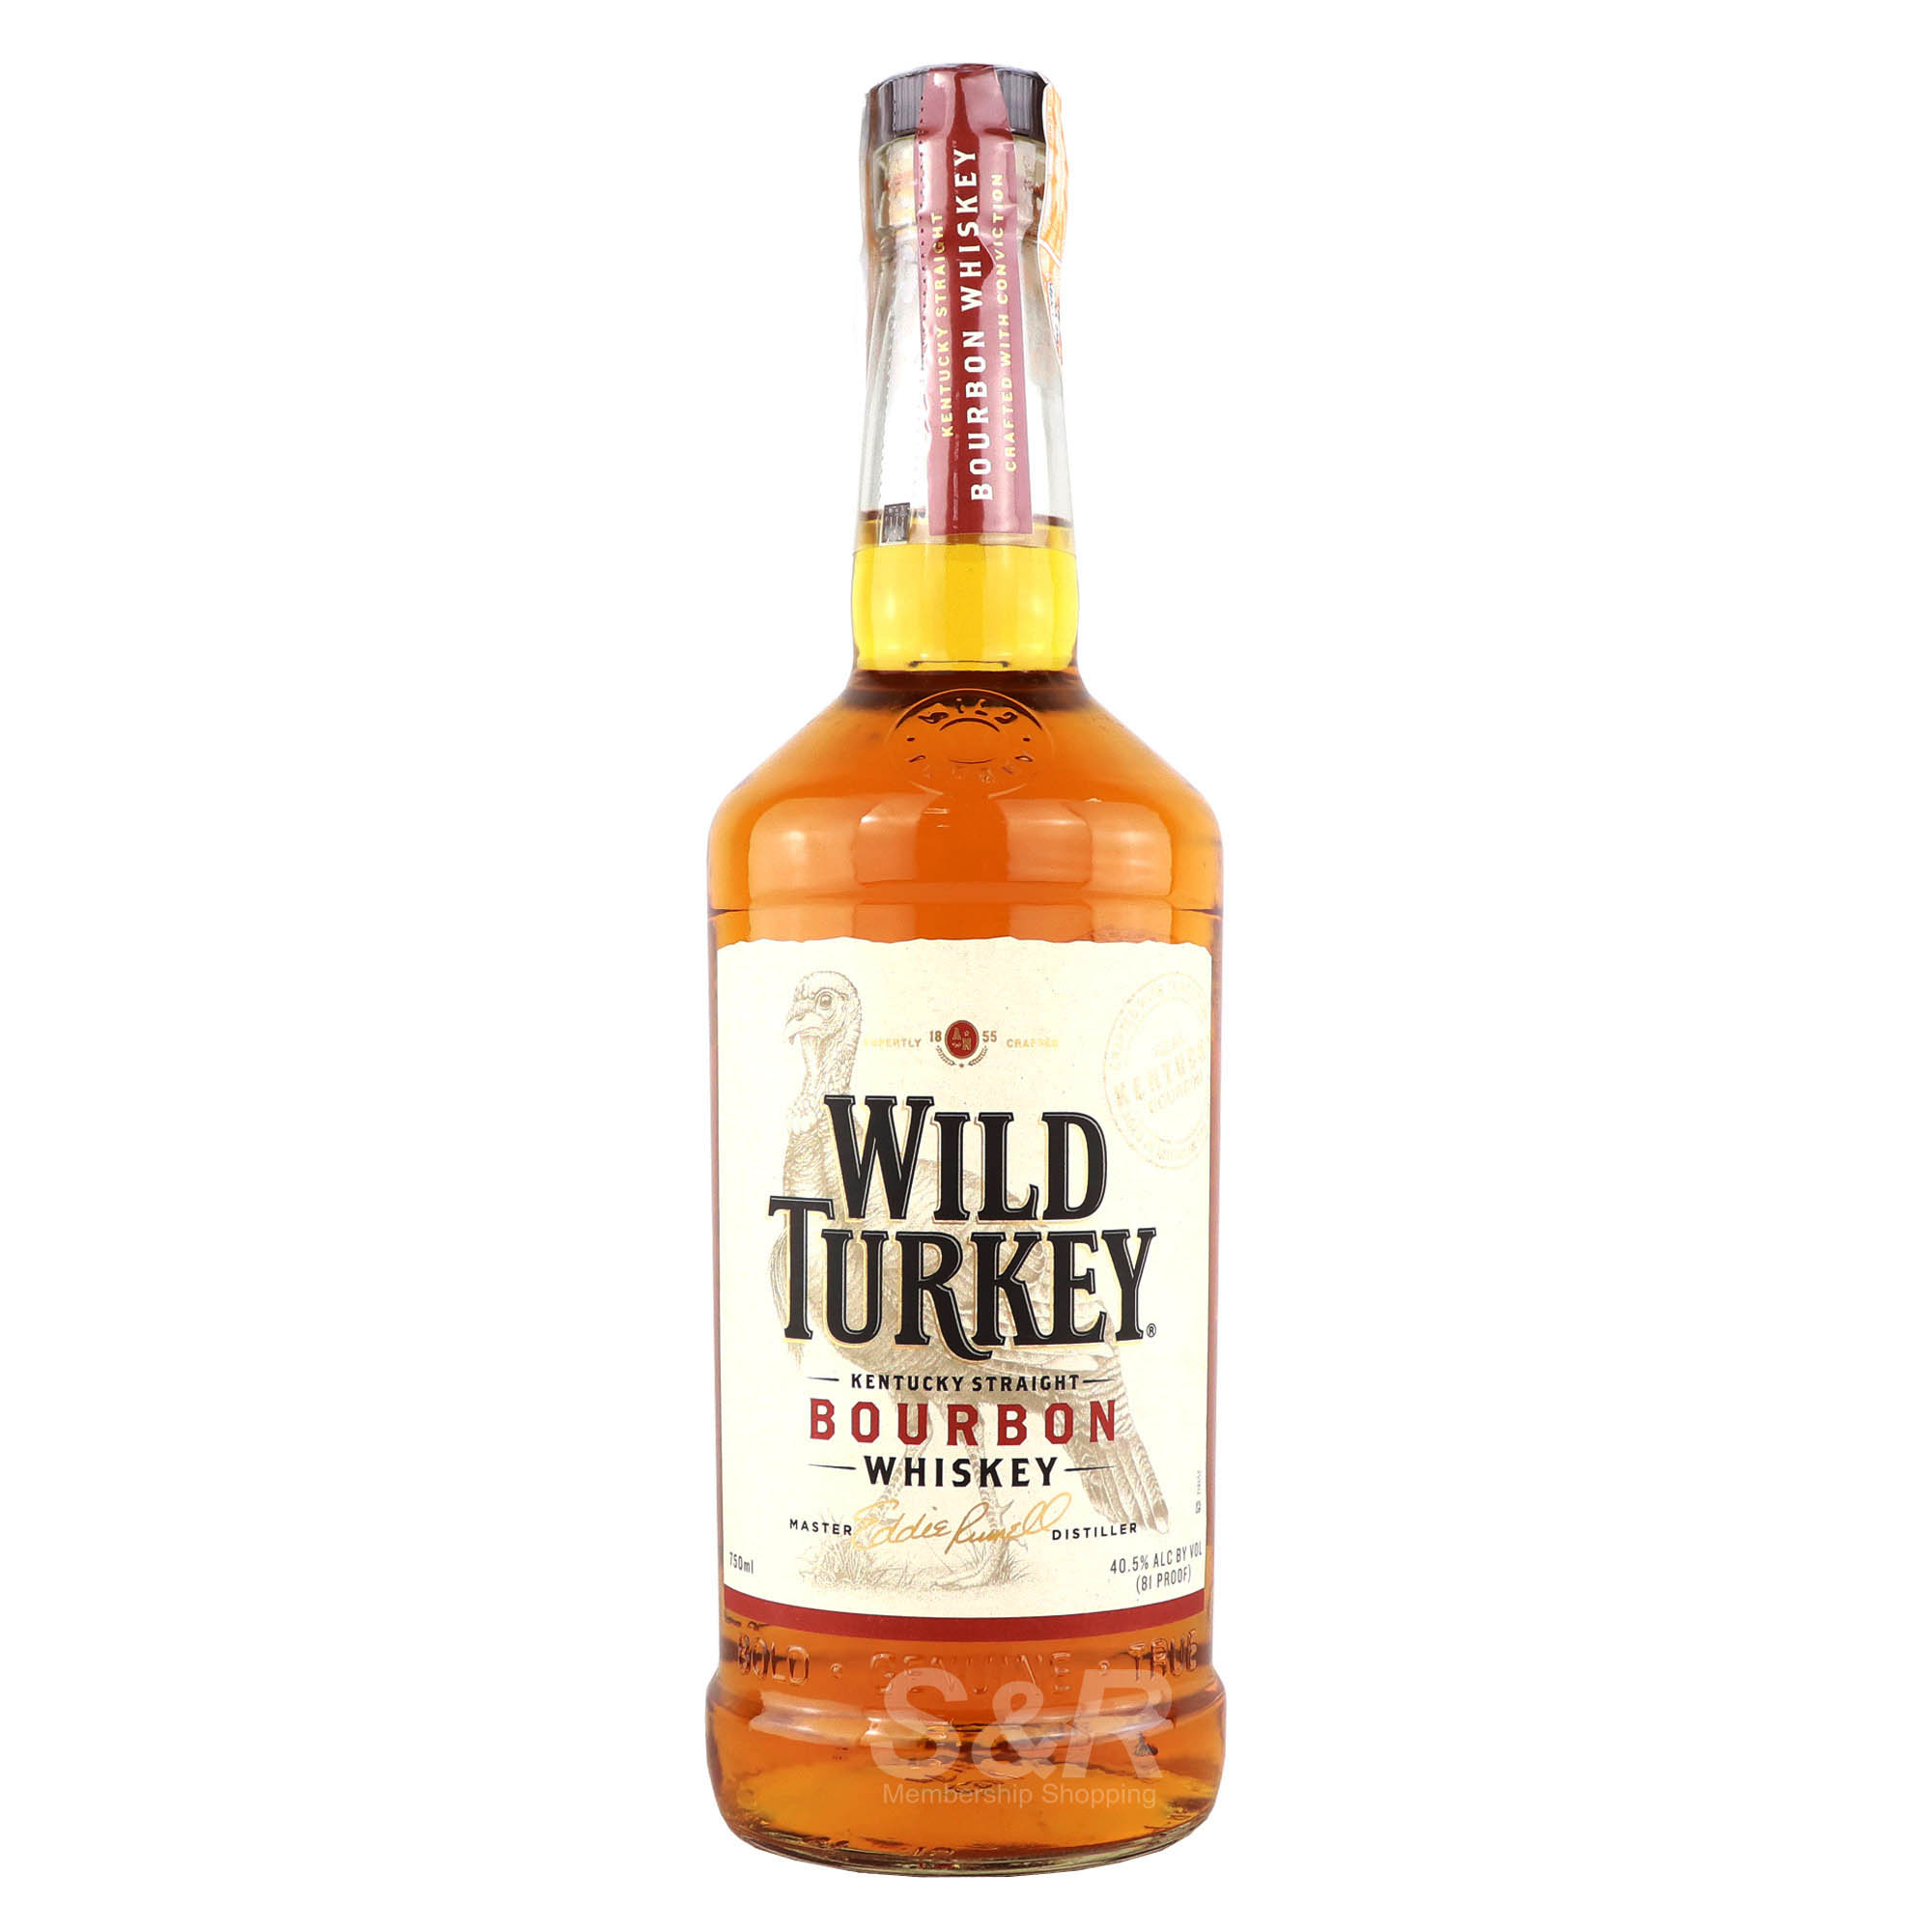 Wild Turkey Kentucky Straight Bourbon Whiskey 750mL